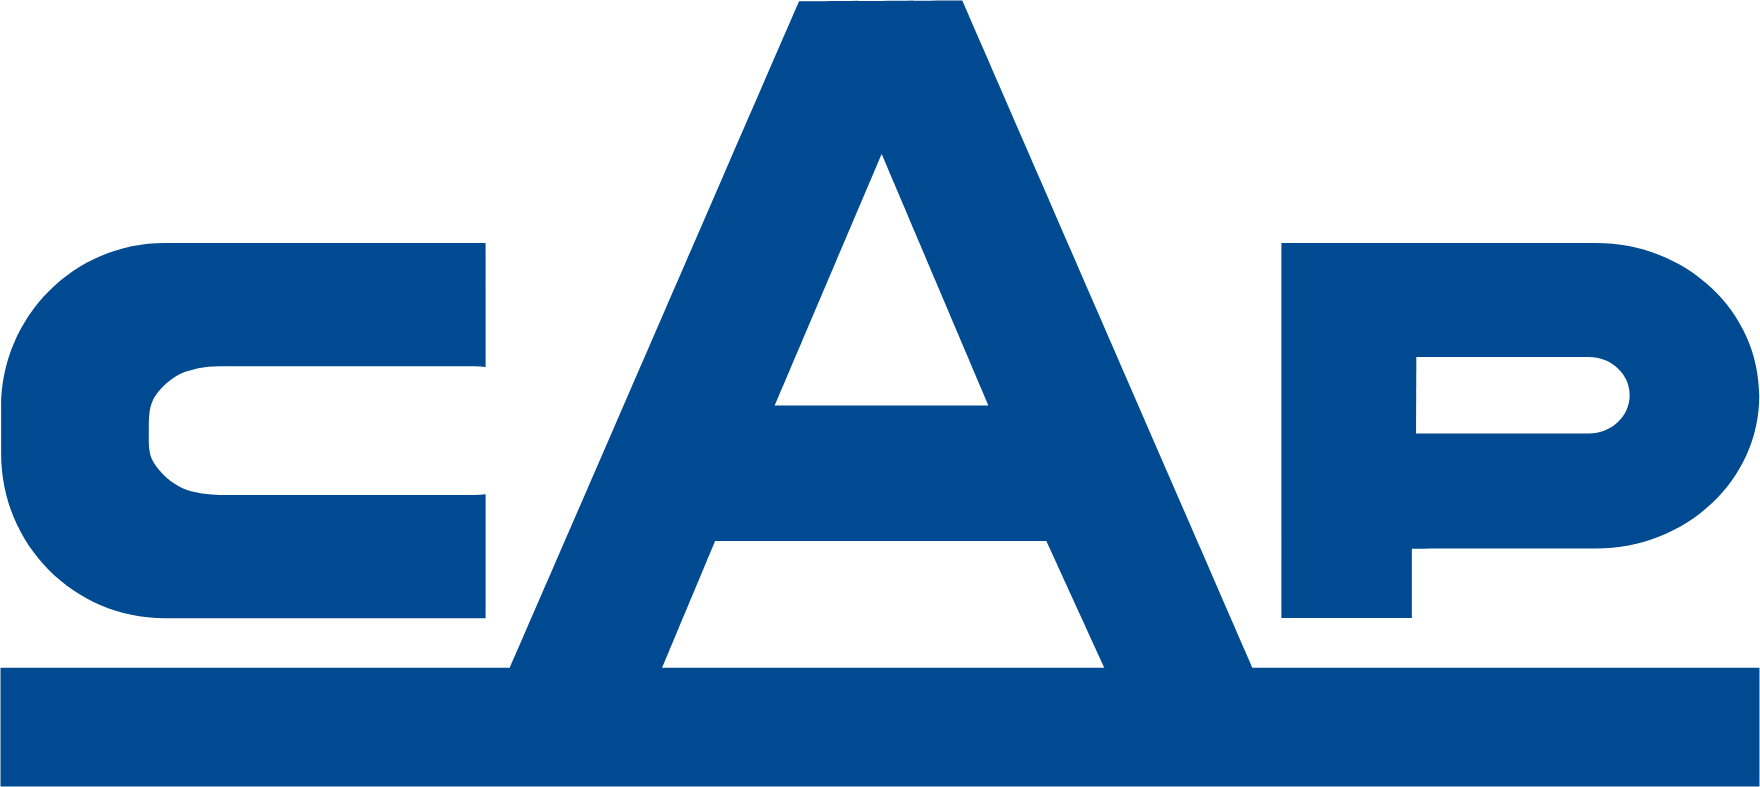 Compañía de Acero del Pacífico
 logo (PNG transparent)